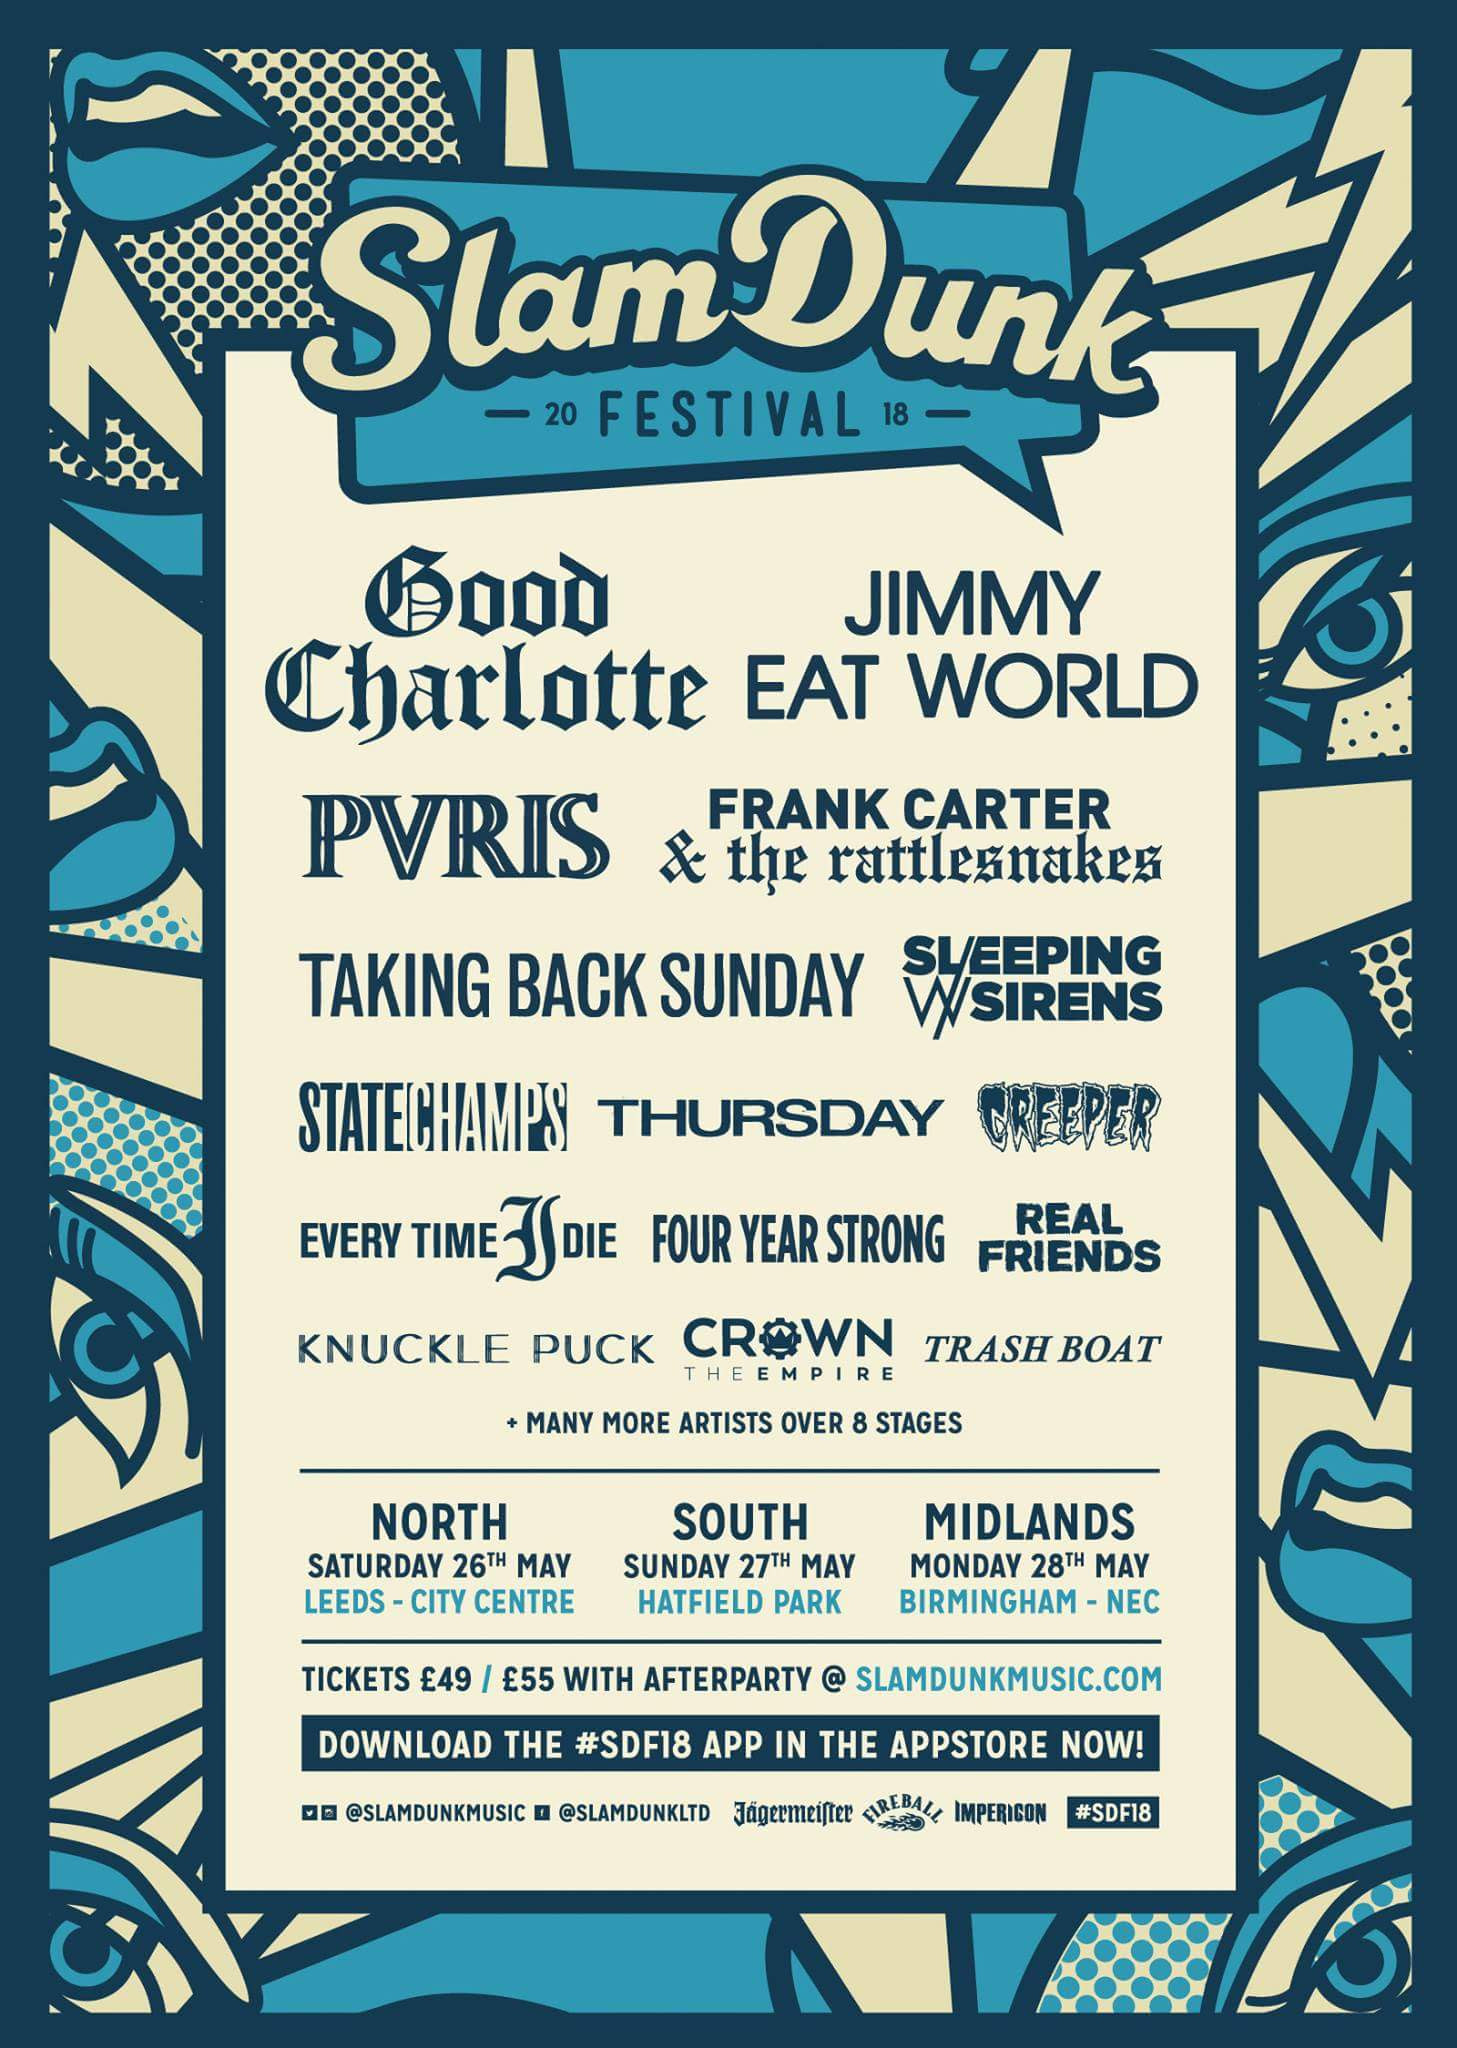 Good Charlotte Set To Co-Headline Slam Dunk Festival 2018